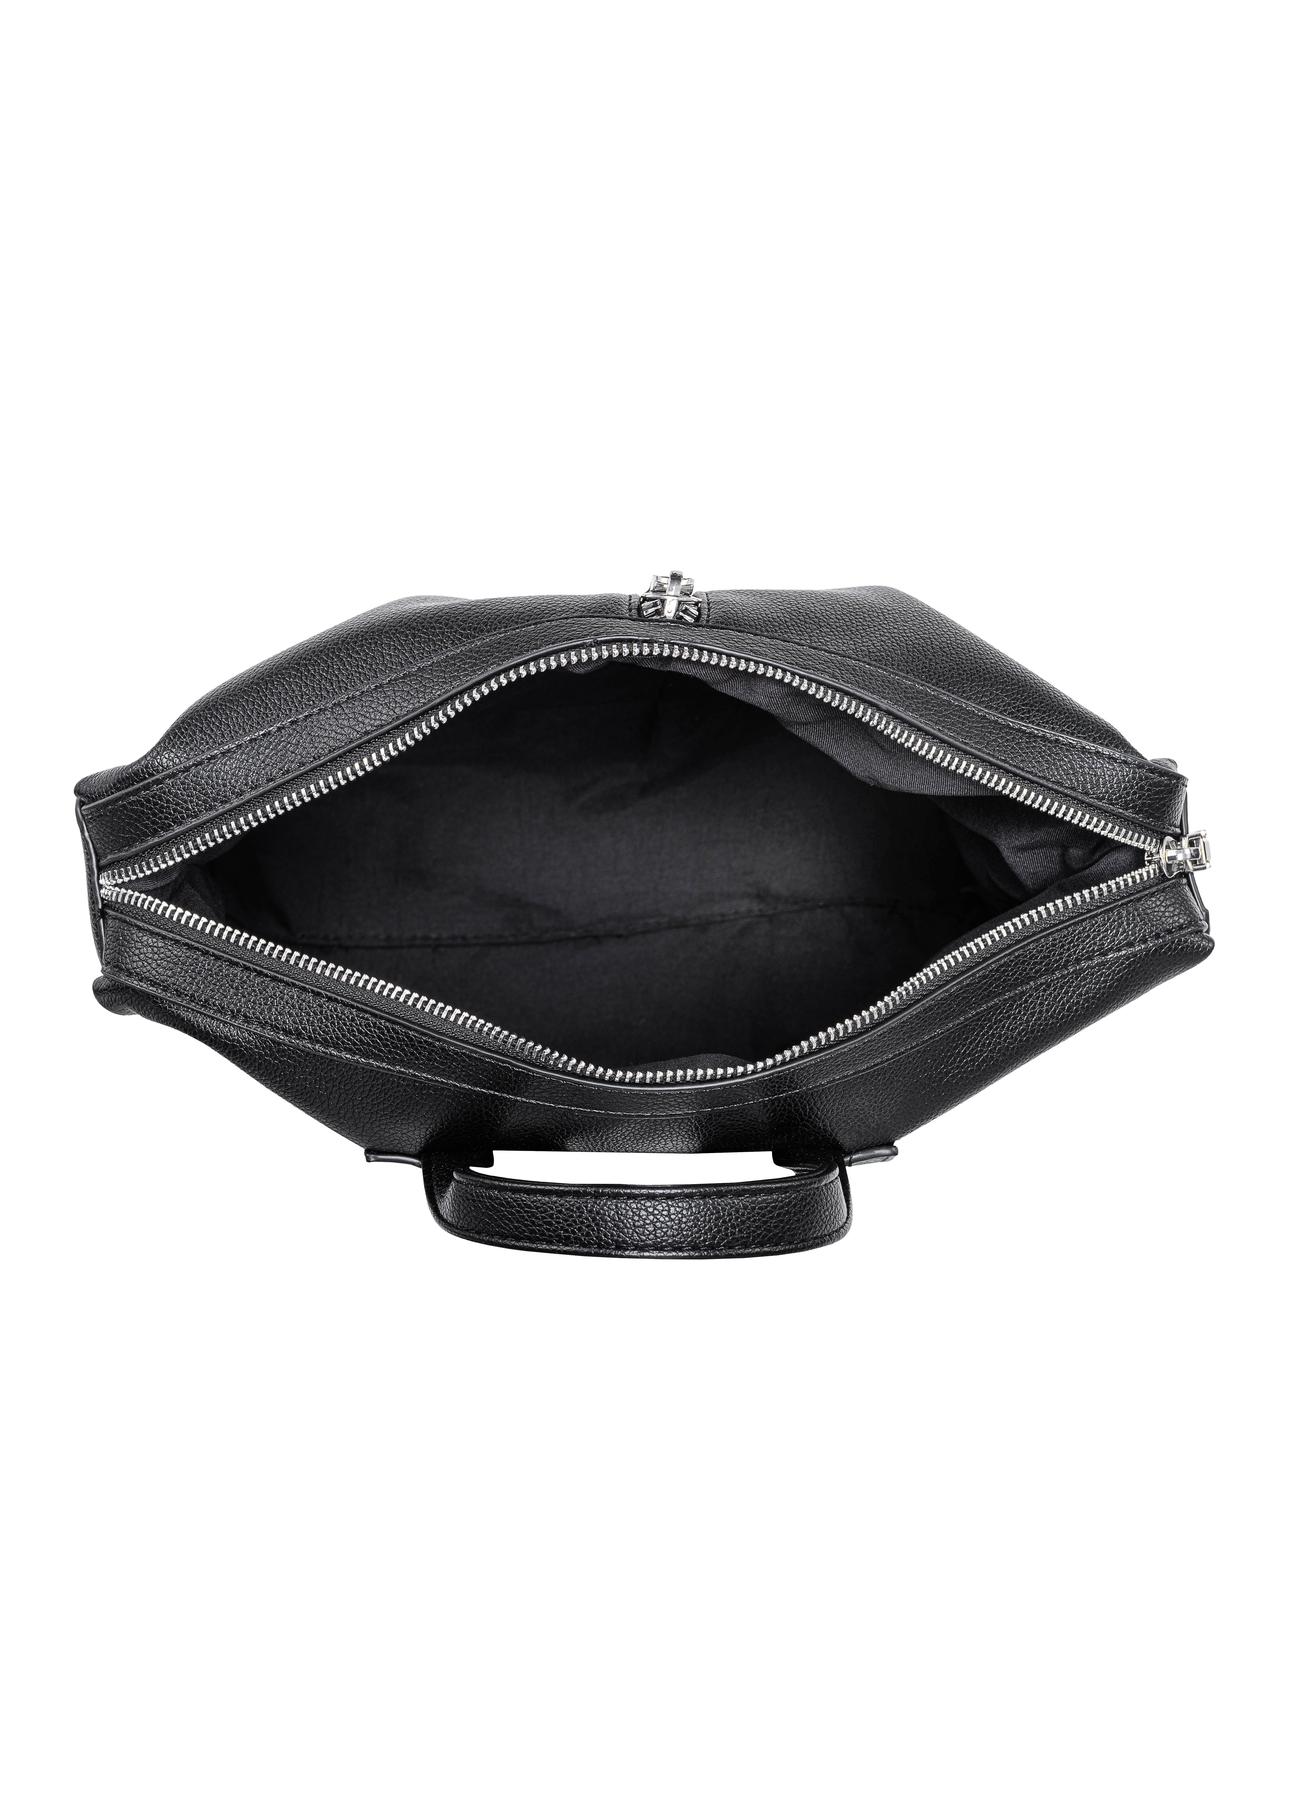 Czarny plecak damski z suwakiem TOREC-0755-99(W23)